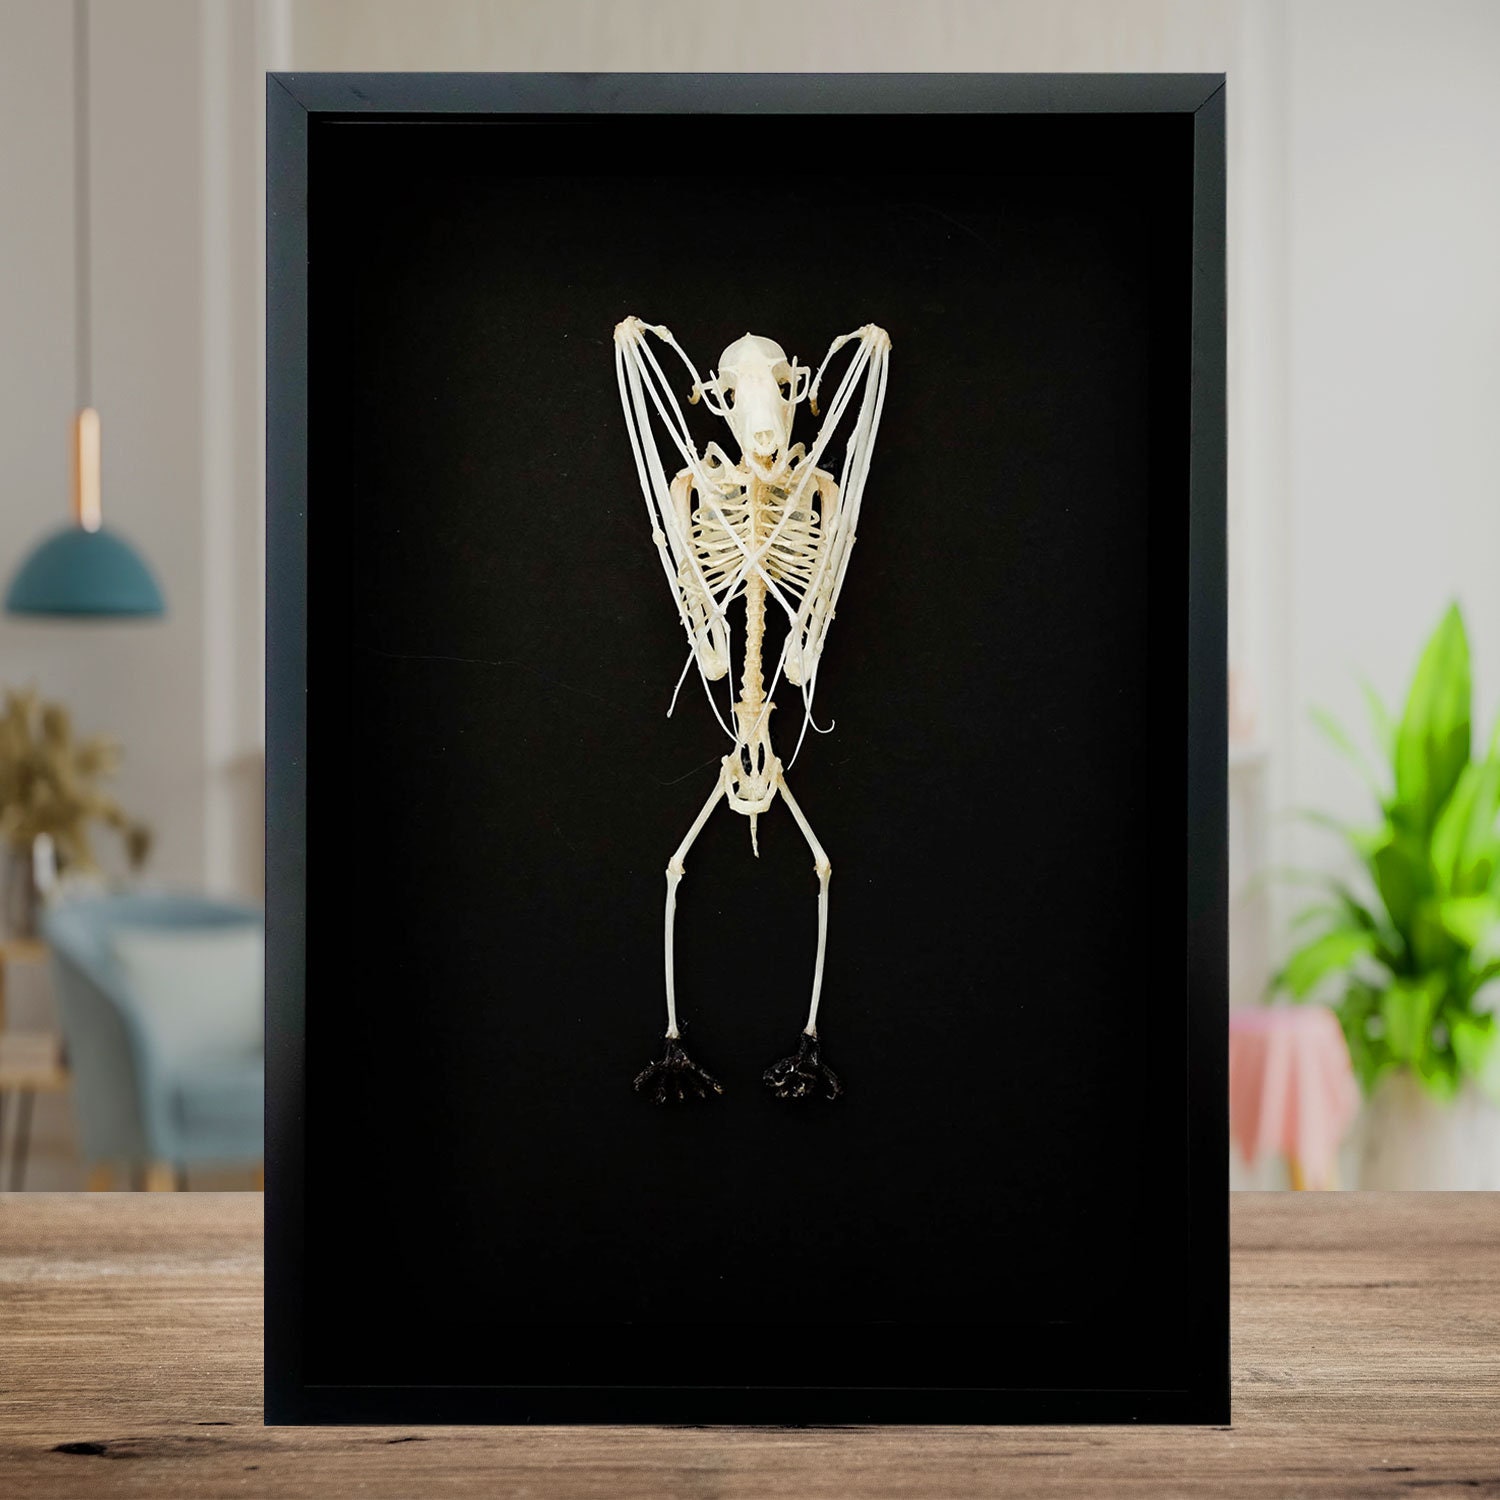 Skelett Fledermaus für Halloween kaufen » Kostümpalast